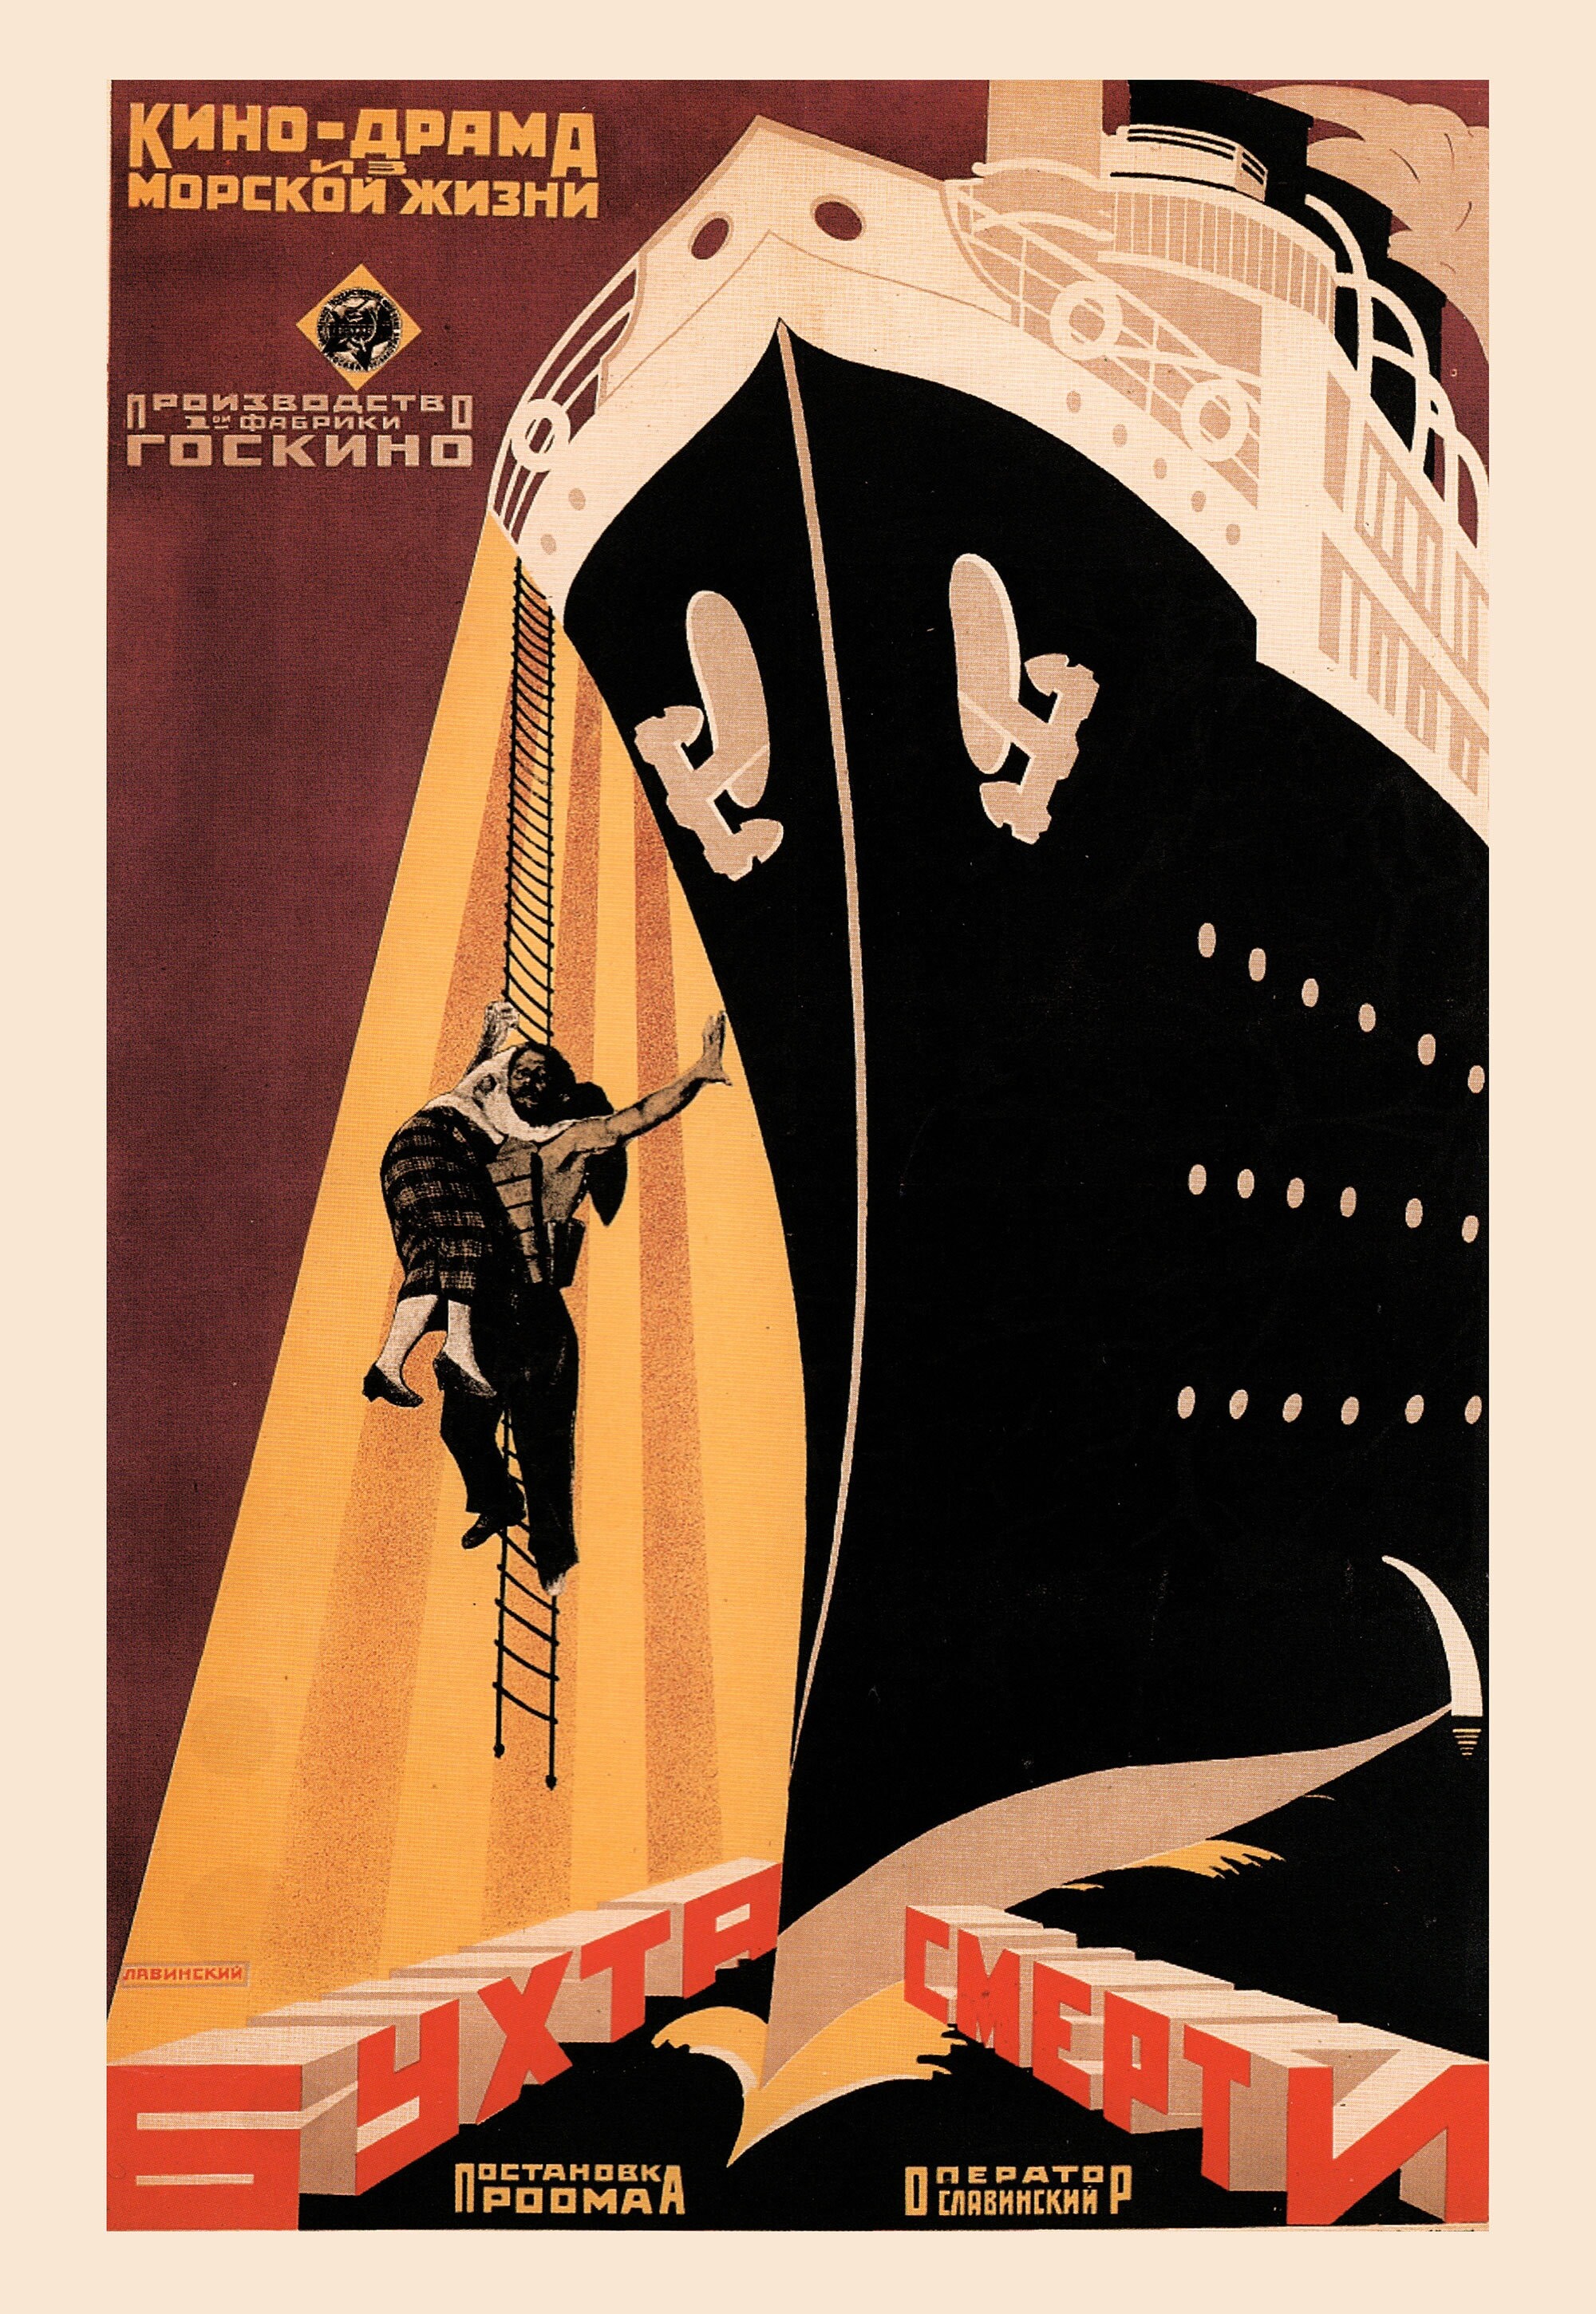 Бухта смерти, 1926 год, режиссёр Абрам Роом, плакат к фильму, автор Антон Лавинский (авангардное советское искусство, 1920-е)